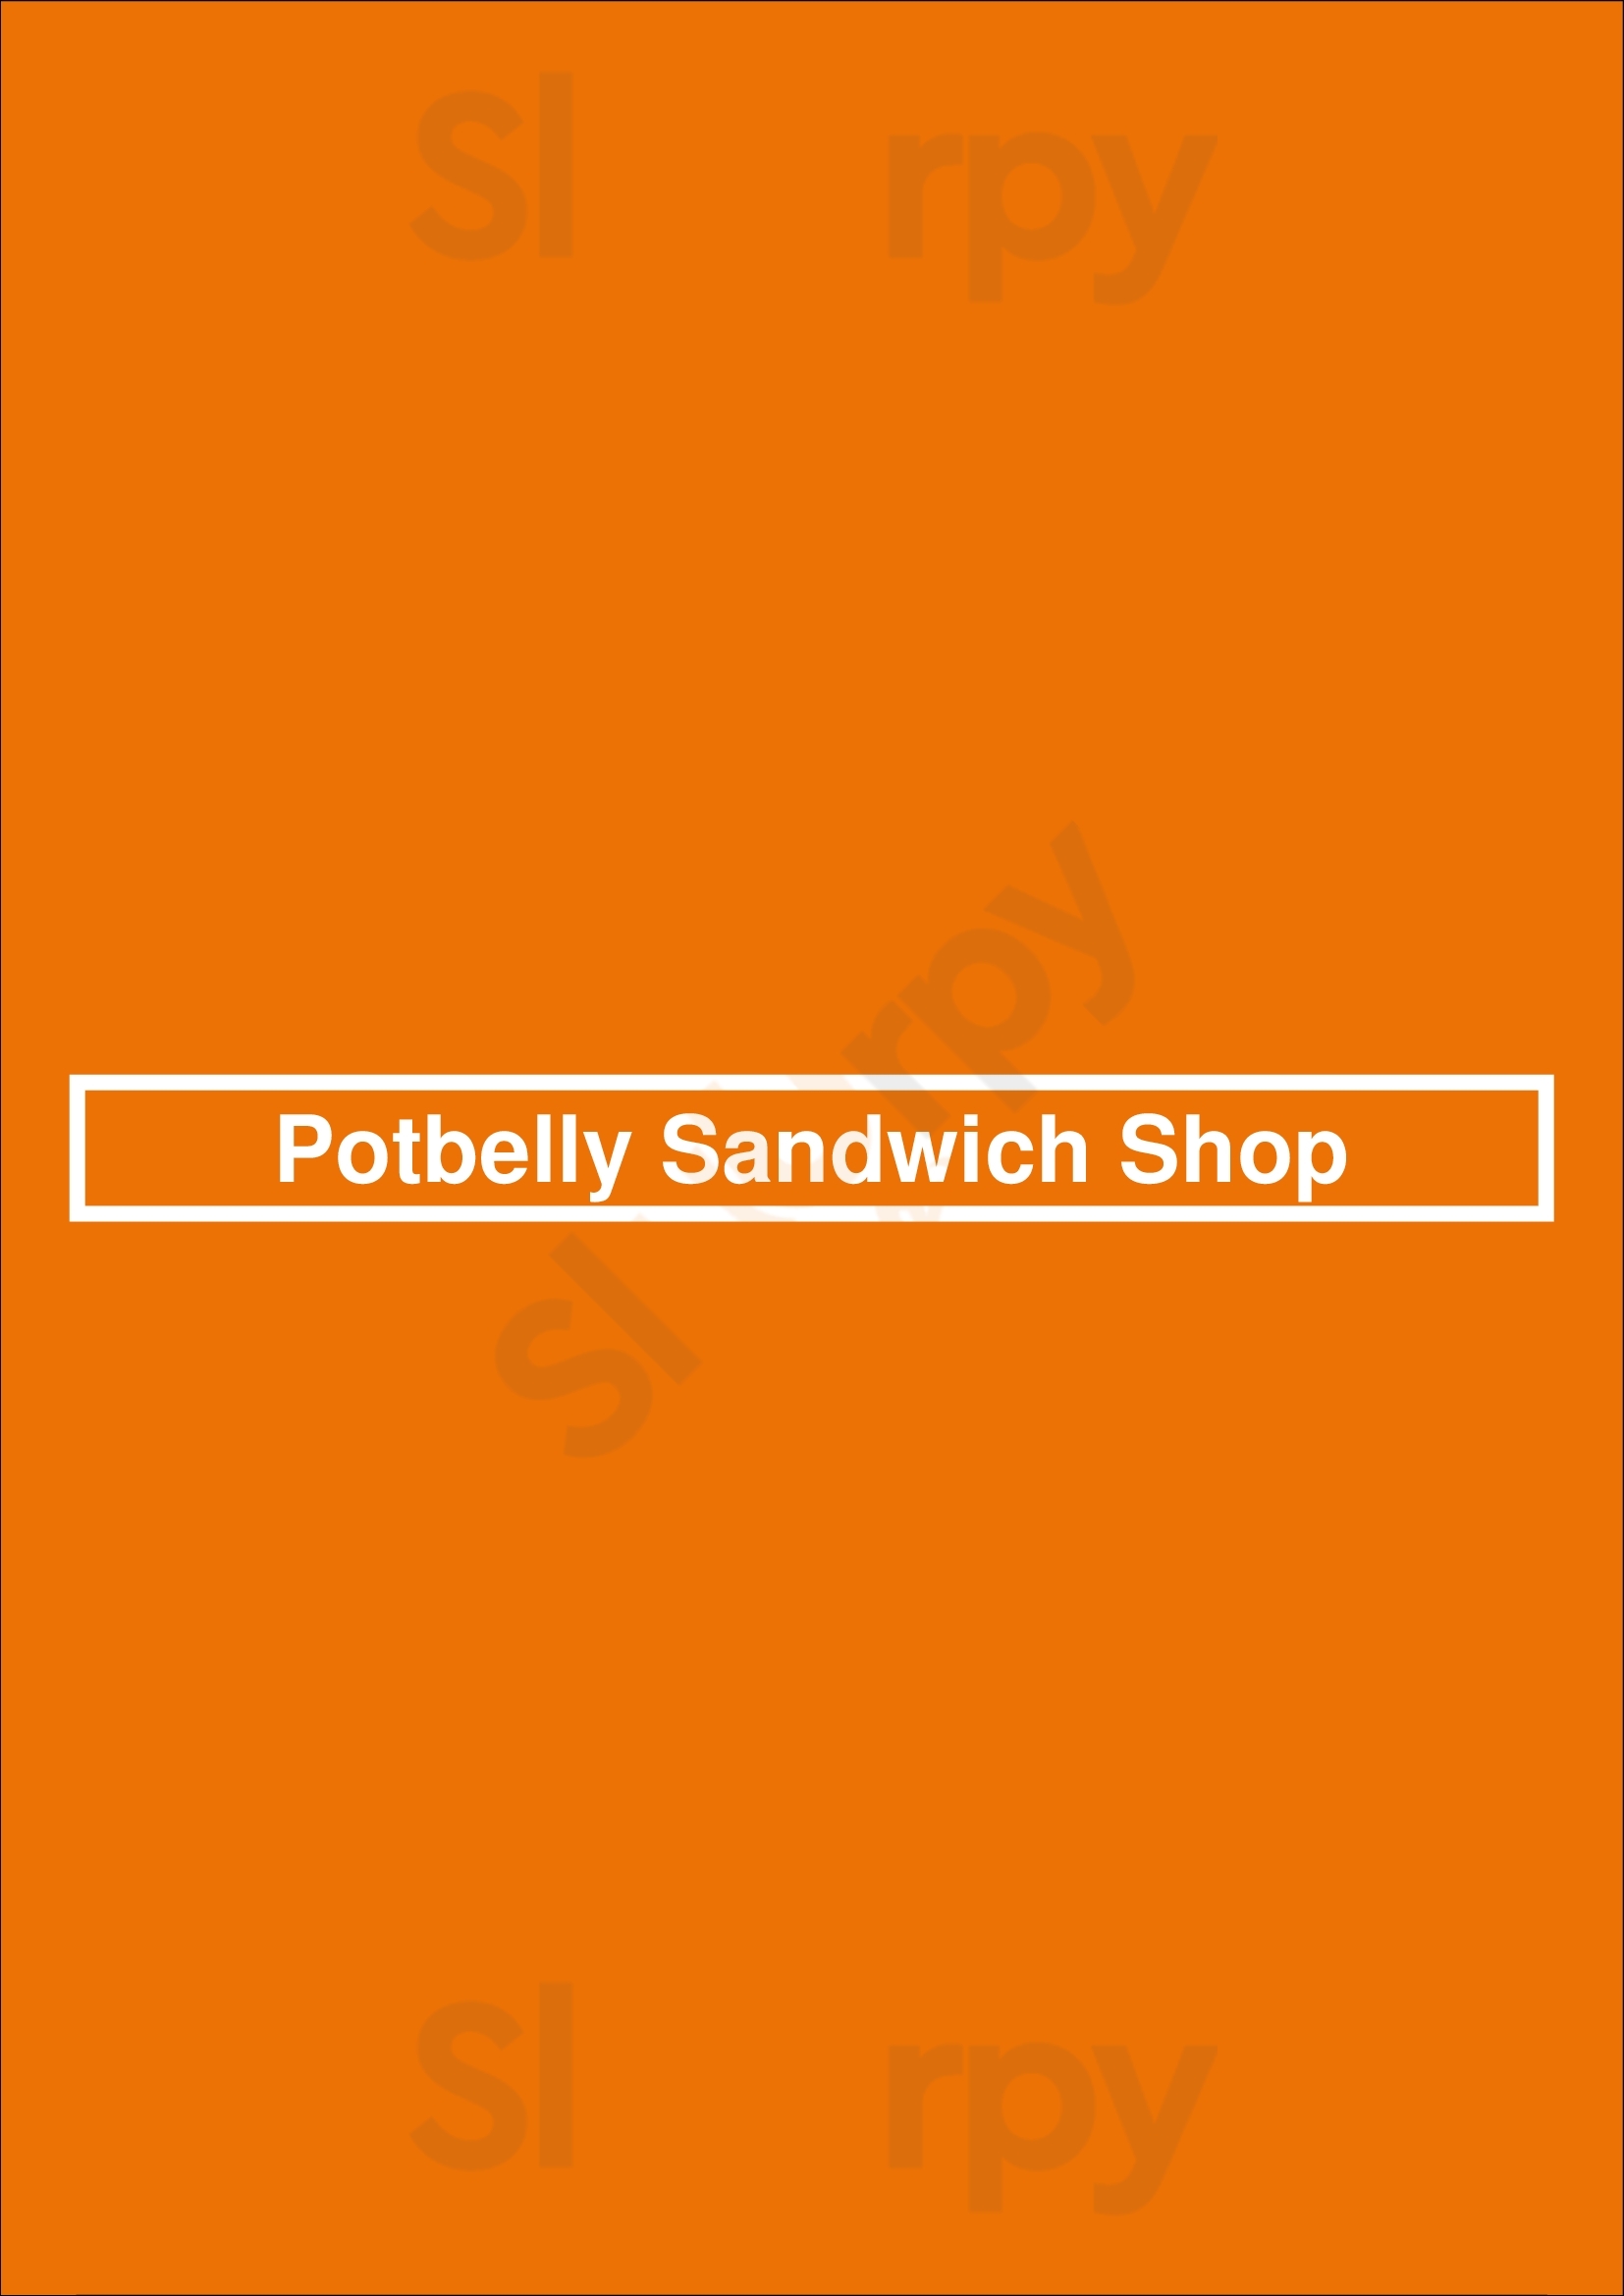 Potbelly Sandwich Shop Minneapolis Menu - 1